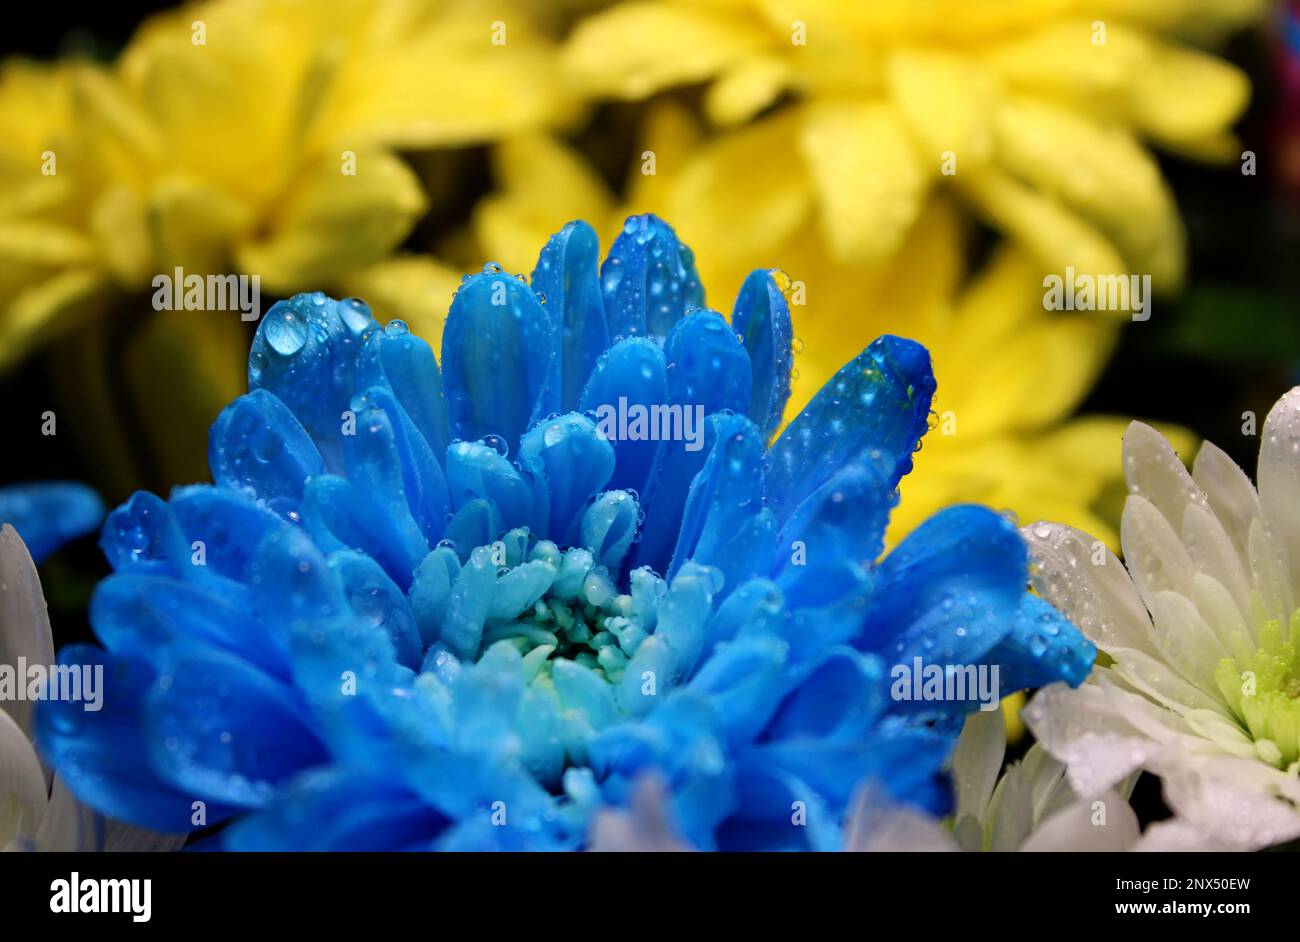 Detailliertes Foto von Tropfen auf gelben und blauen Blumen in den Farben der ukrainischen Flagge Stockfoto